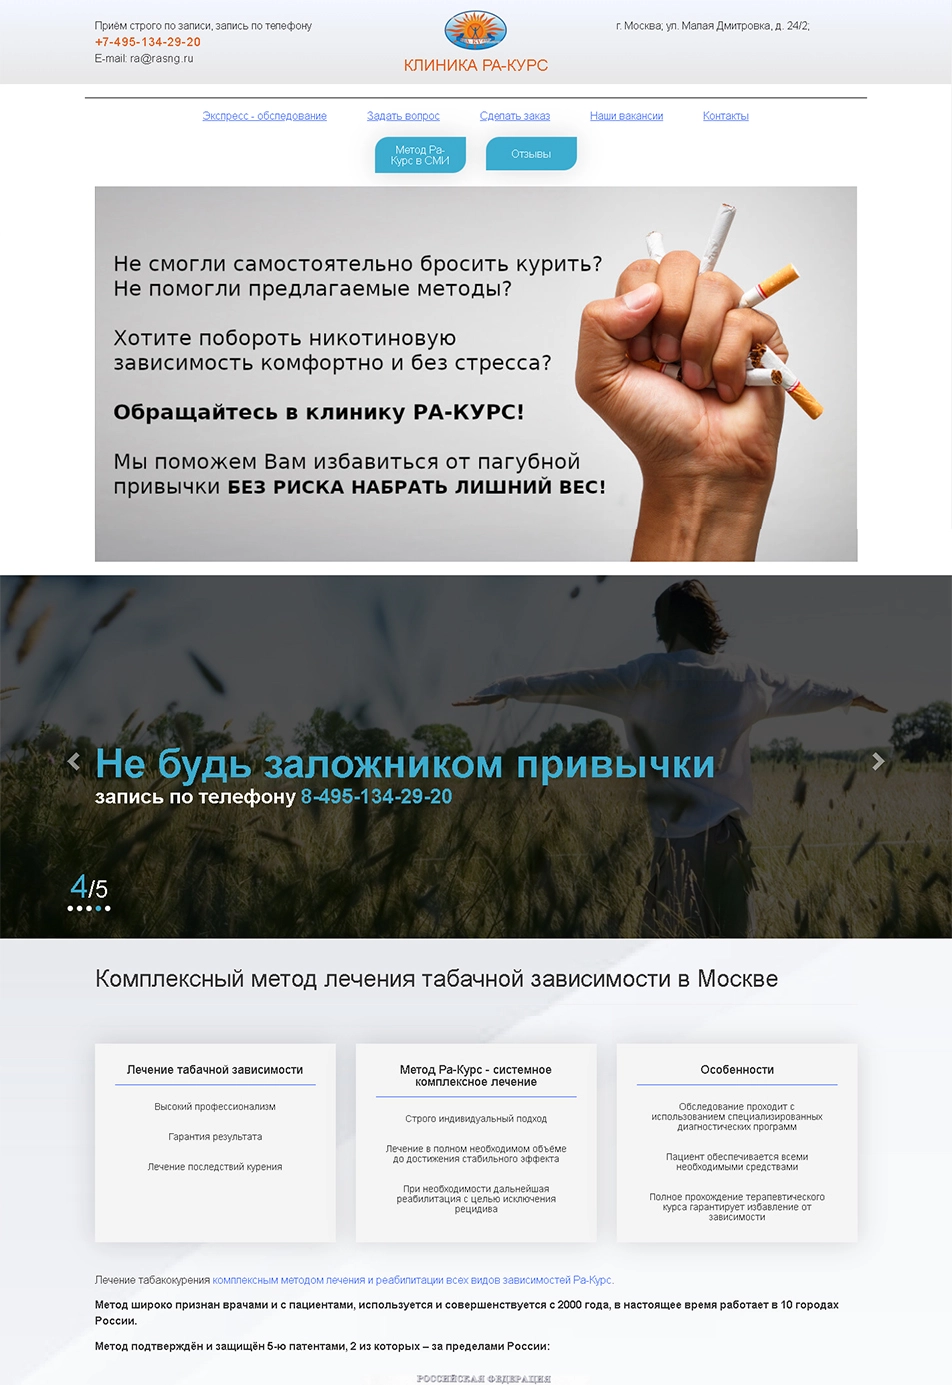 Медицинский сайт - Лечение никотиновой зависимости г. Москва